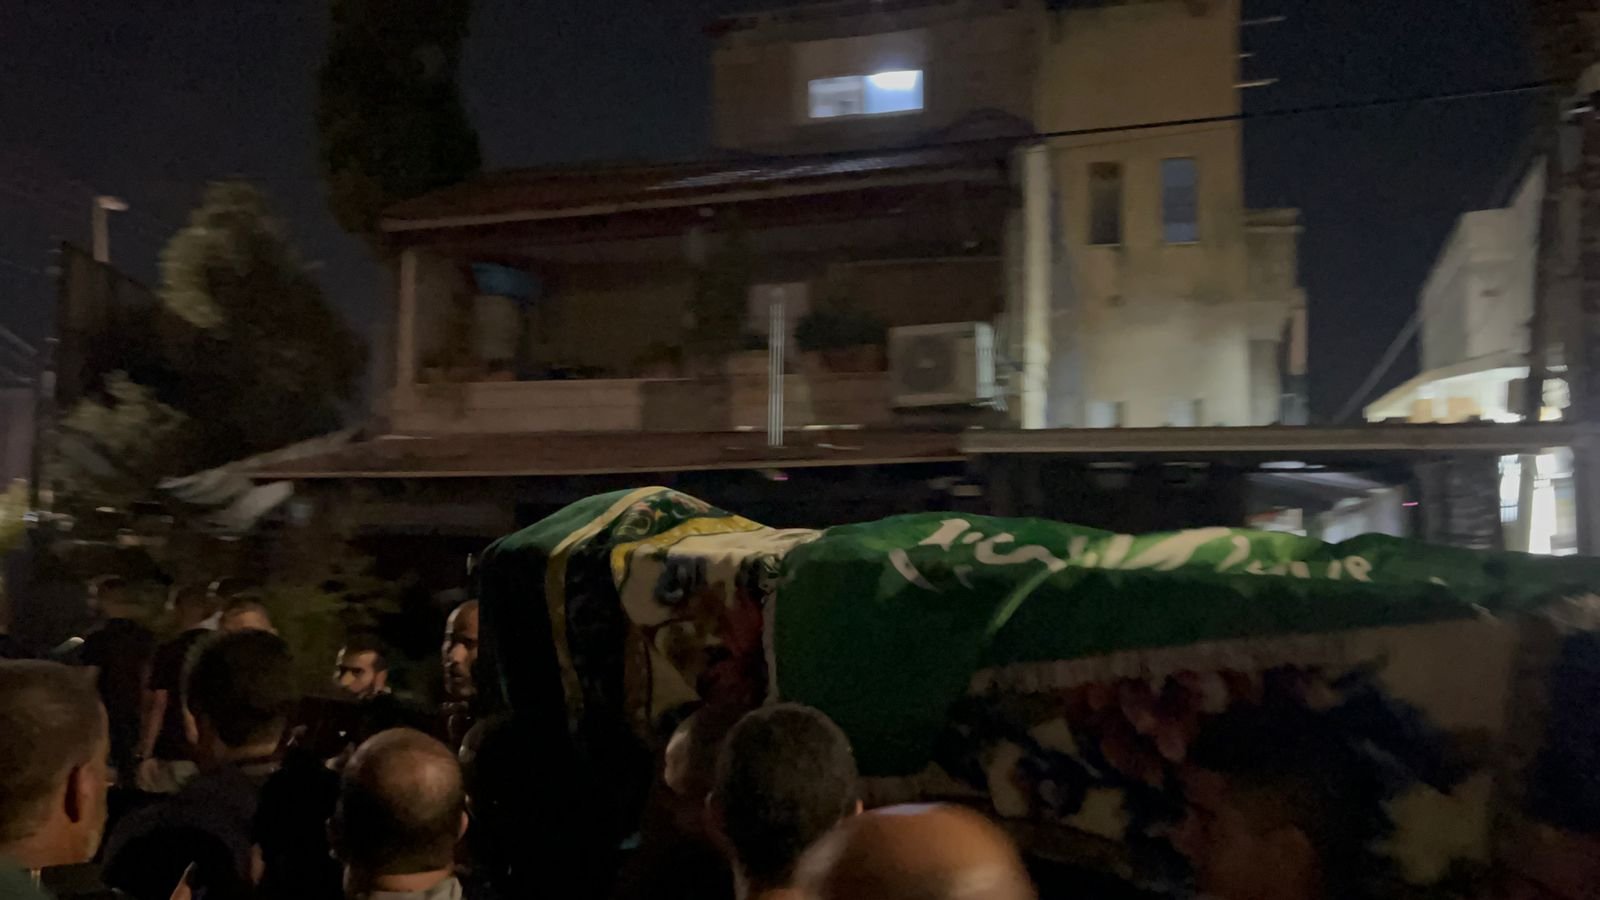 كفرقرع: بعد جنازة الشيخ سامي عبد اللطيف، الالاف يهتفون "زهقنا الدم زهقنا الموت" واغلاق شارع 65-18